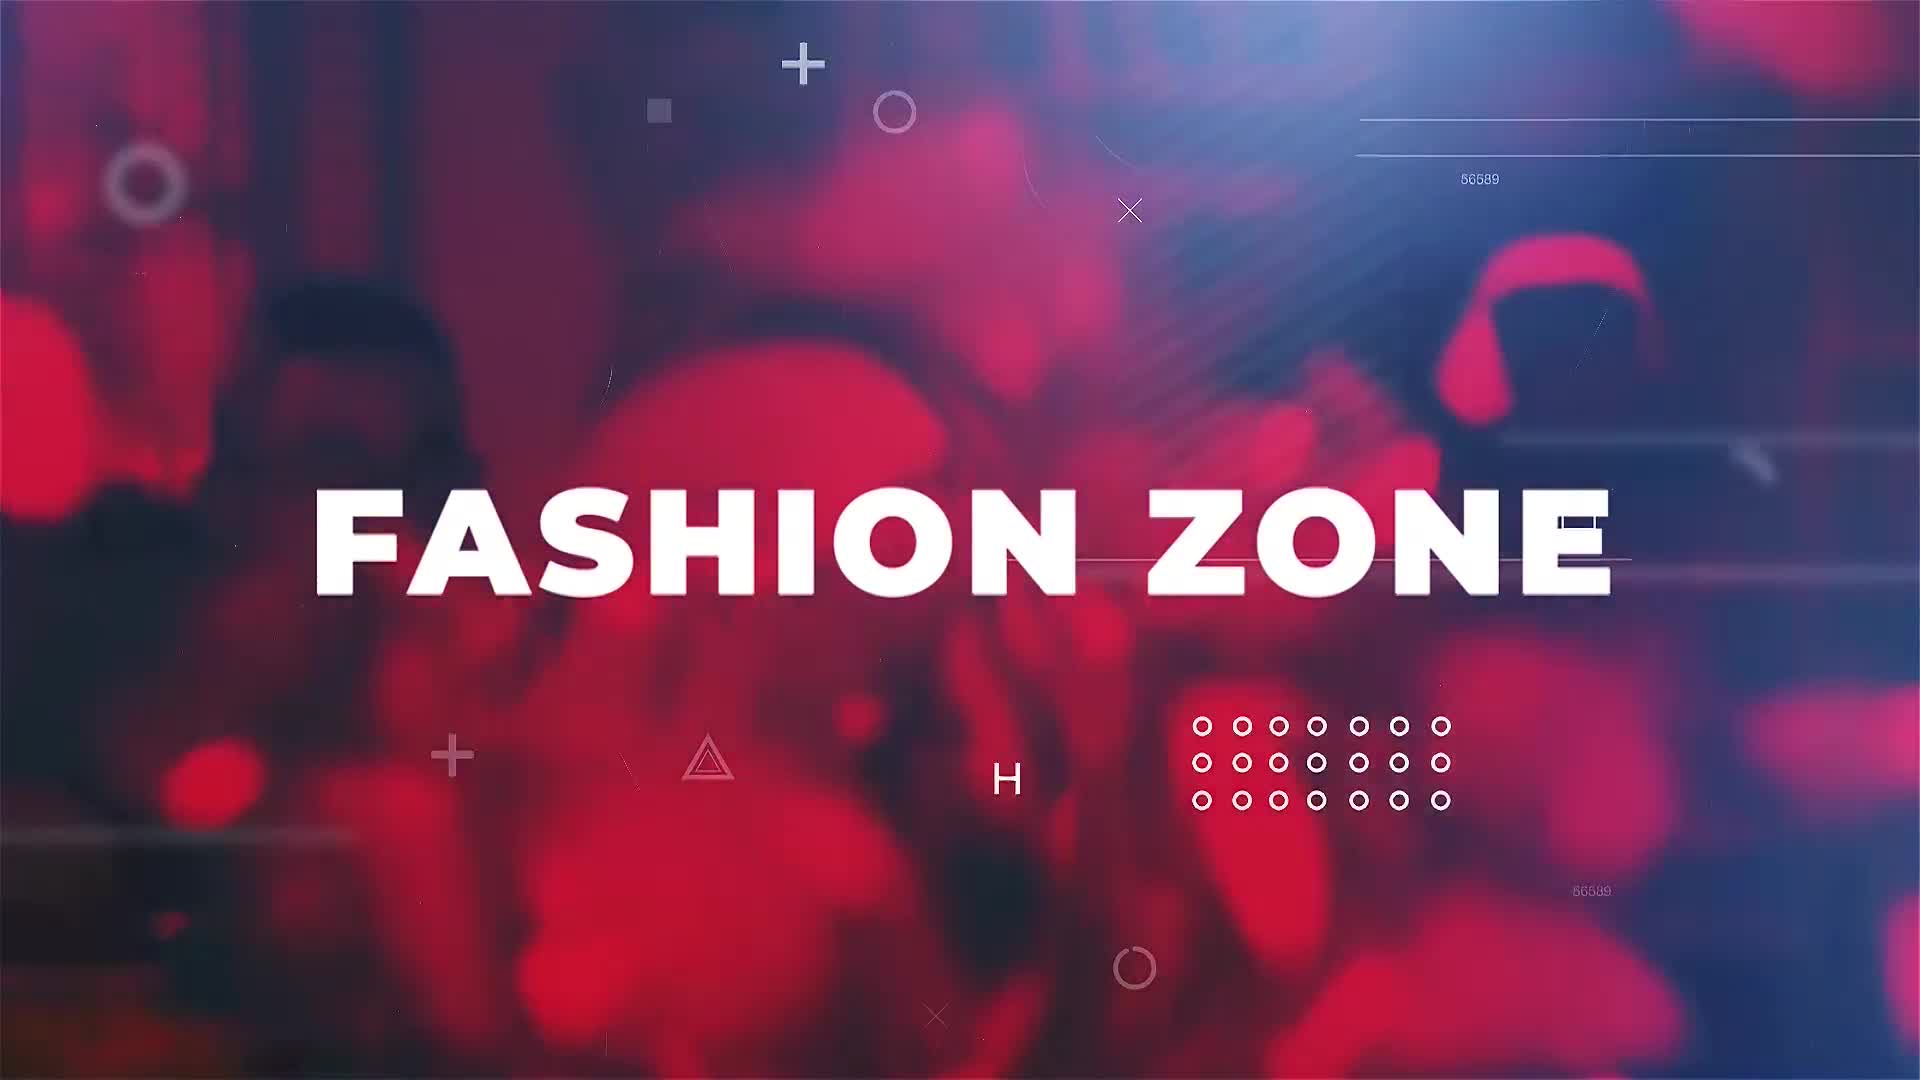 Fashion Zone Videohive 23862588 Premiere Pro Image 10